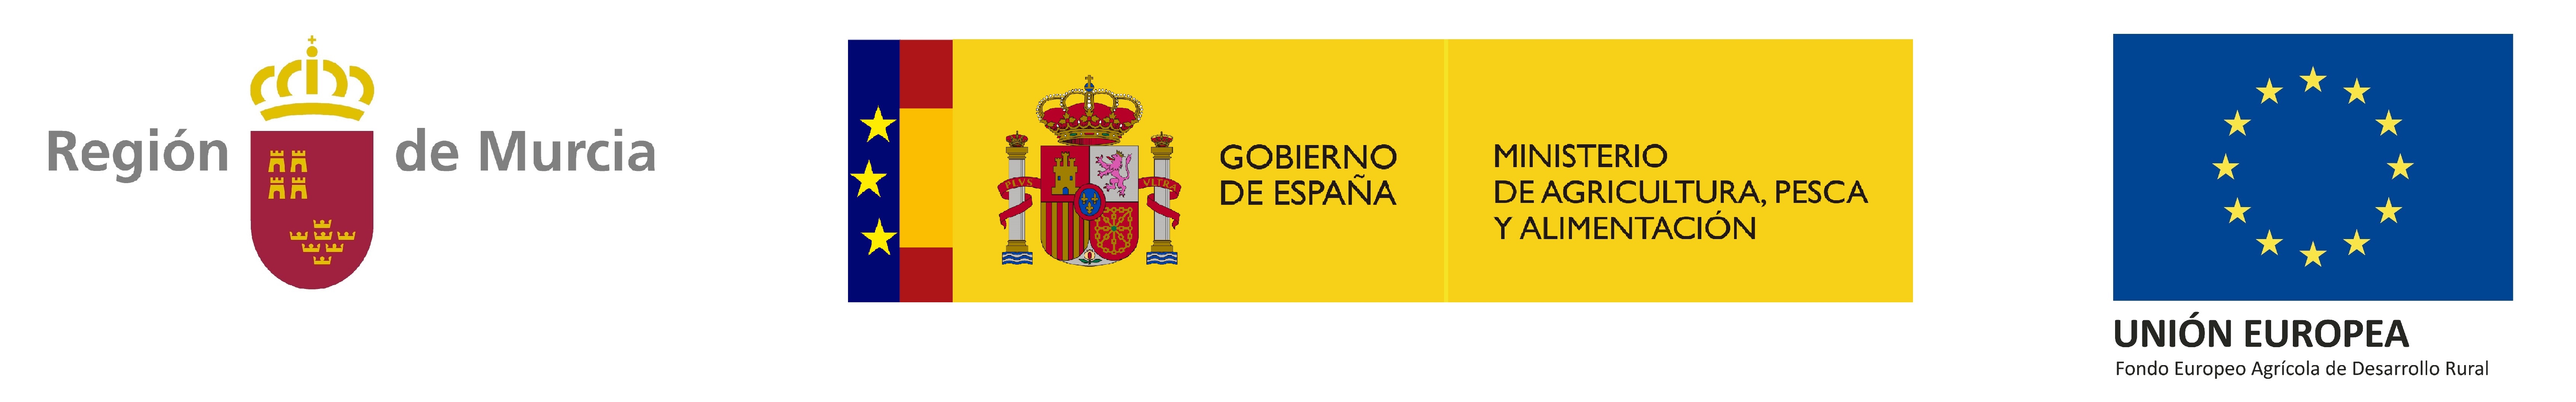 Logotipo Región de Murcia-Ministerio de Agricultura, Pesca y Alimentación-Unión Europea Web